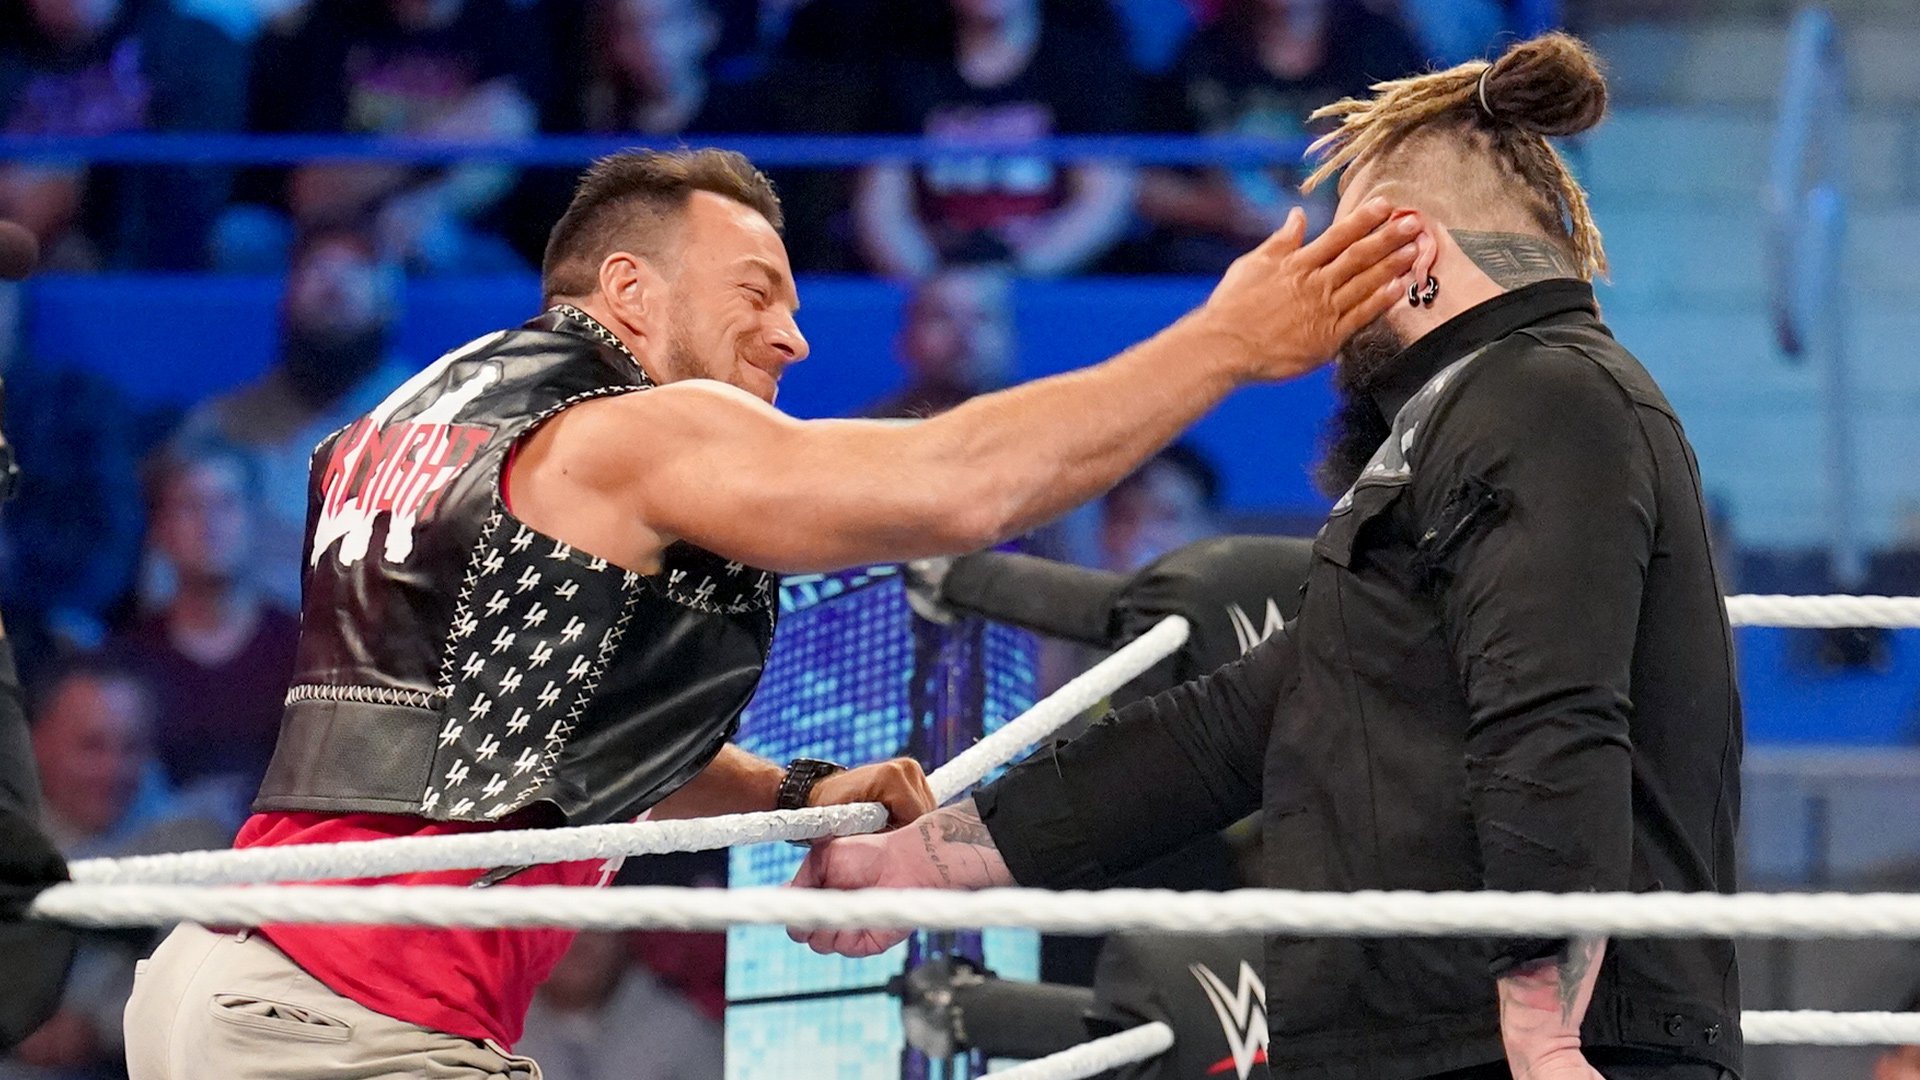 LA Knight comenta sobre rivalidade com Bray Wyatt na WWE